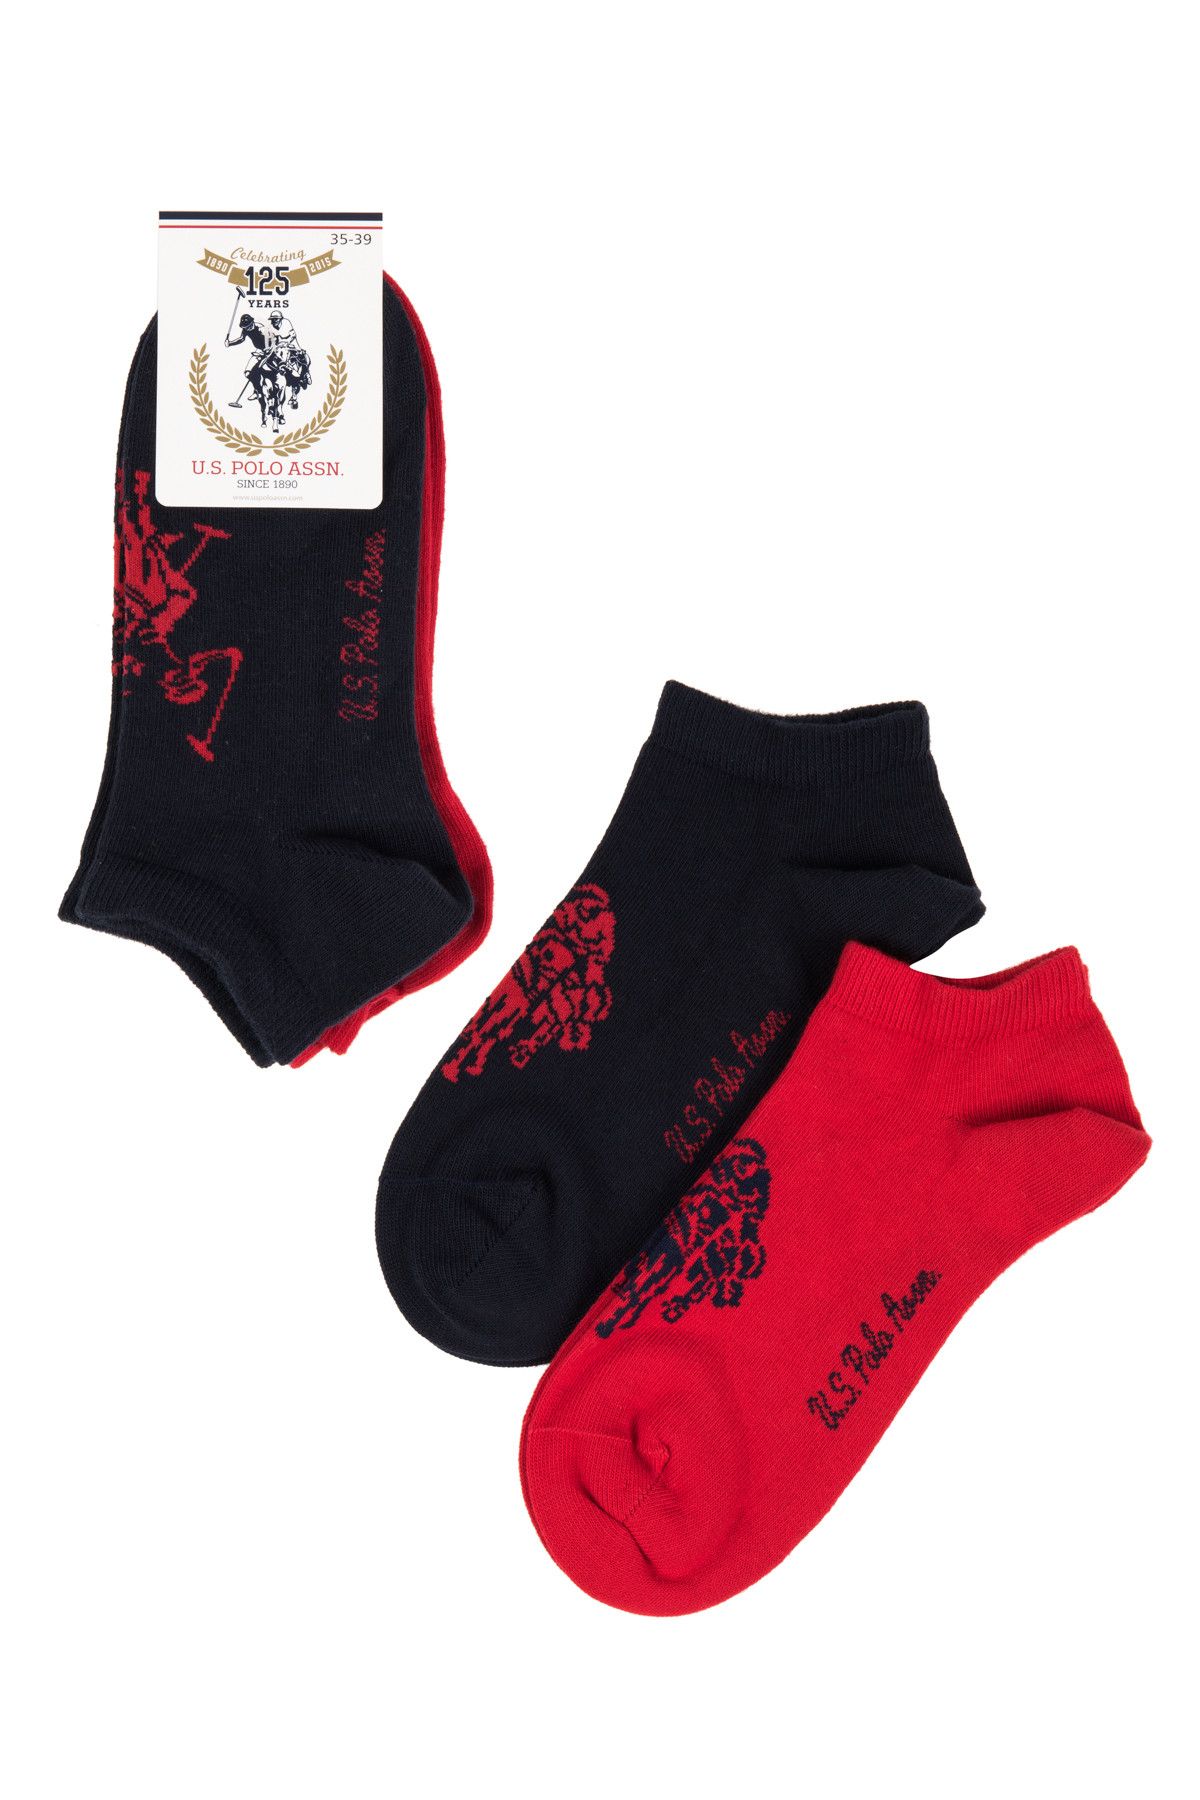 U.S. Polo Assn. Kadın Lacivert - Kırmızı  Desenli Patik Çorap  SC16FW02CS020044